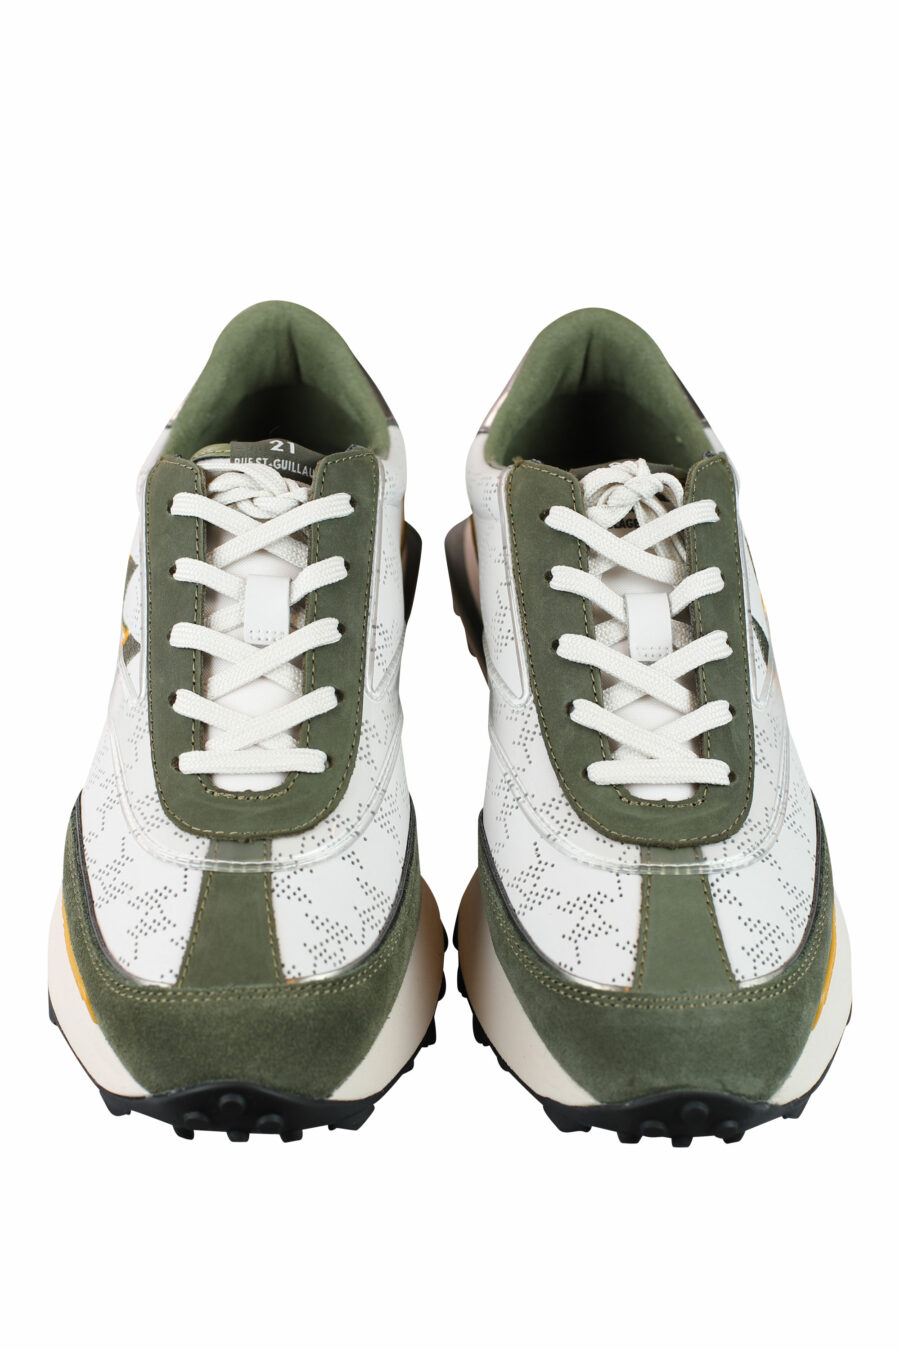 Zapatillas "Zone" blancas con verde - IMG 9993